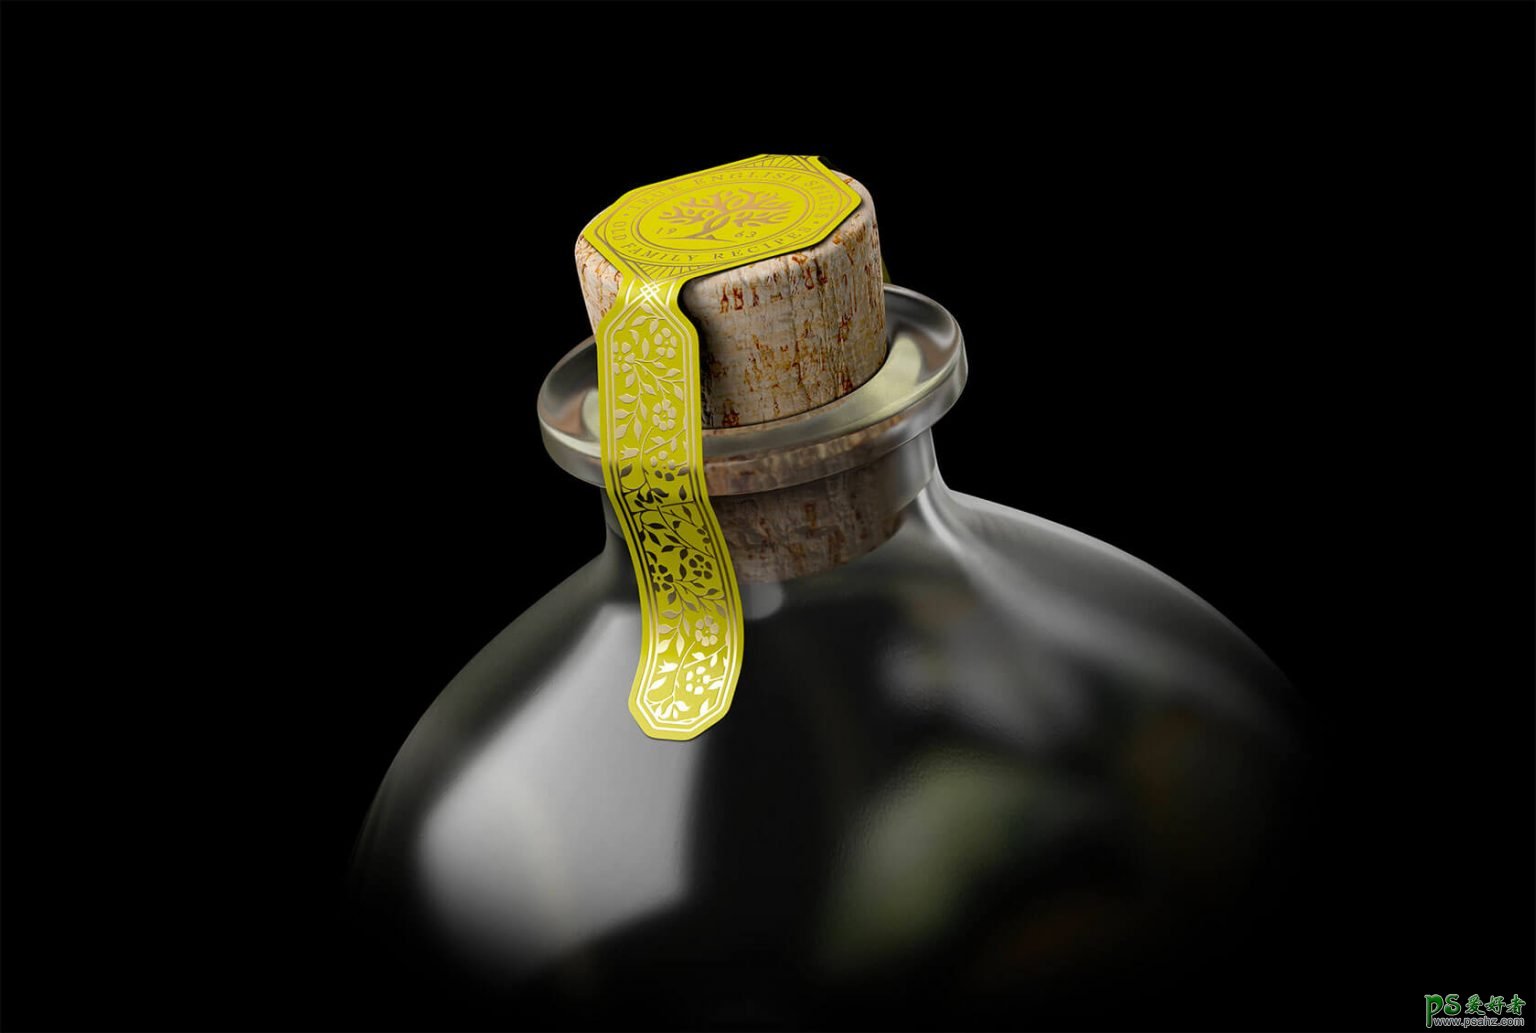 英国创意机构高端酒瓶包装设计,精致、时尚、高端酒瓶设计。